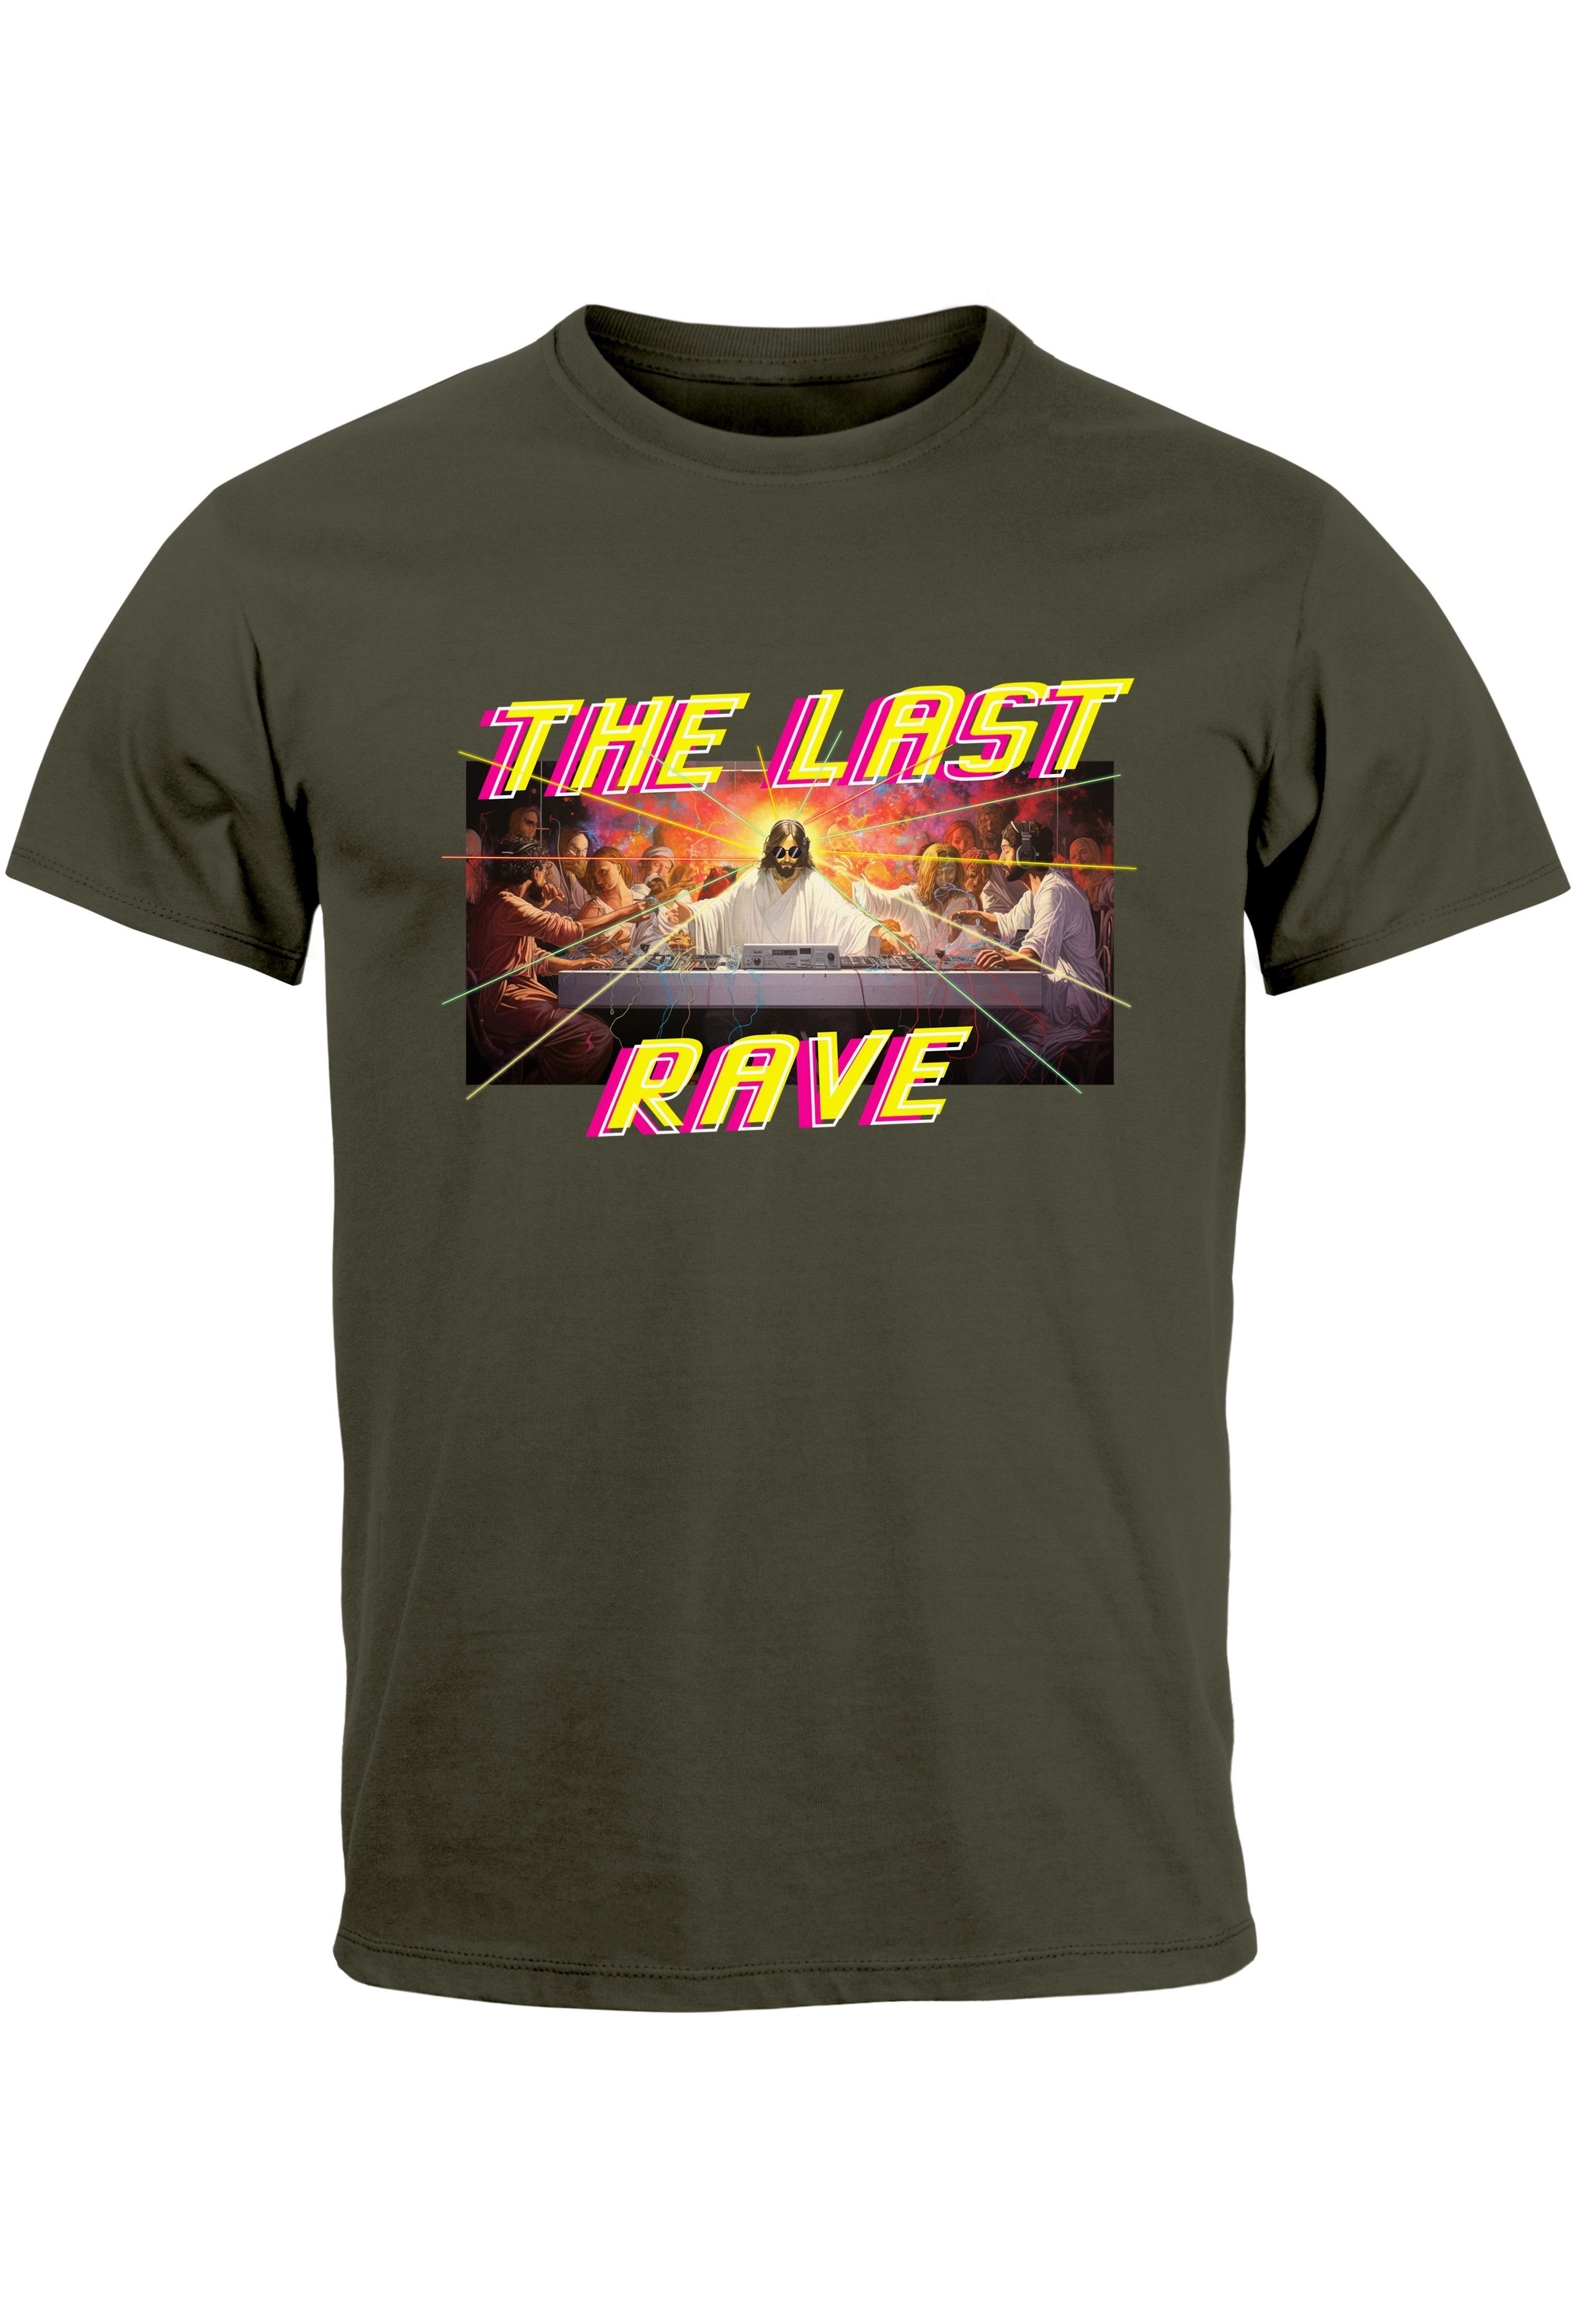 Neverless Print-Shirt Techno Herren letzte The T-Shirt mit Last Jesus Abendmahl Rave army Das Print Parodie